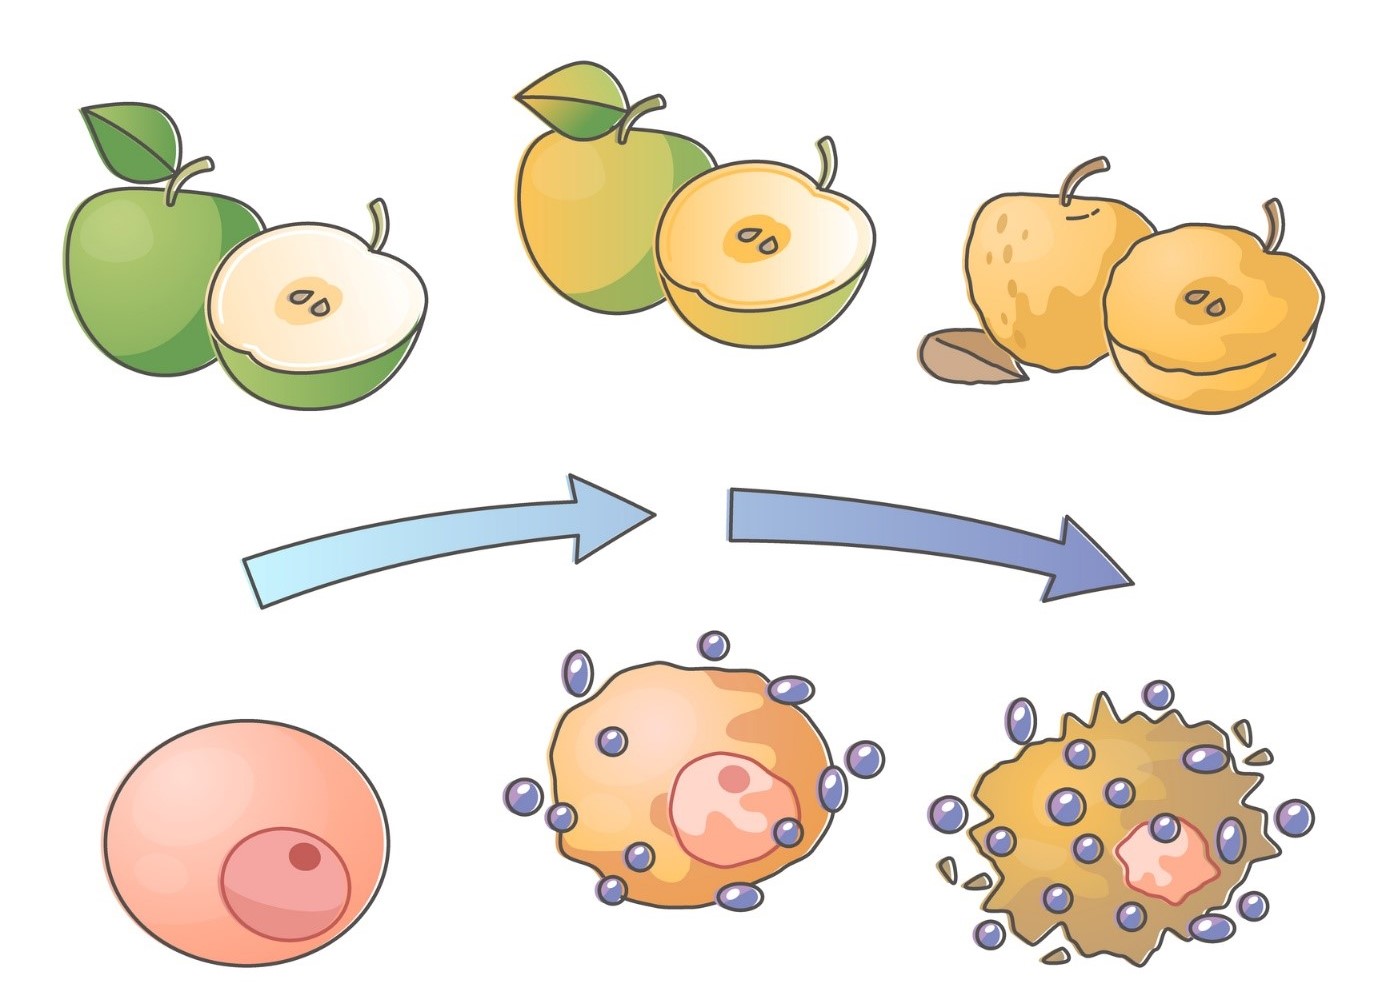 Oxidační stres - ilustrace rozpadu jablek a buněk